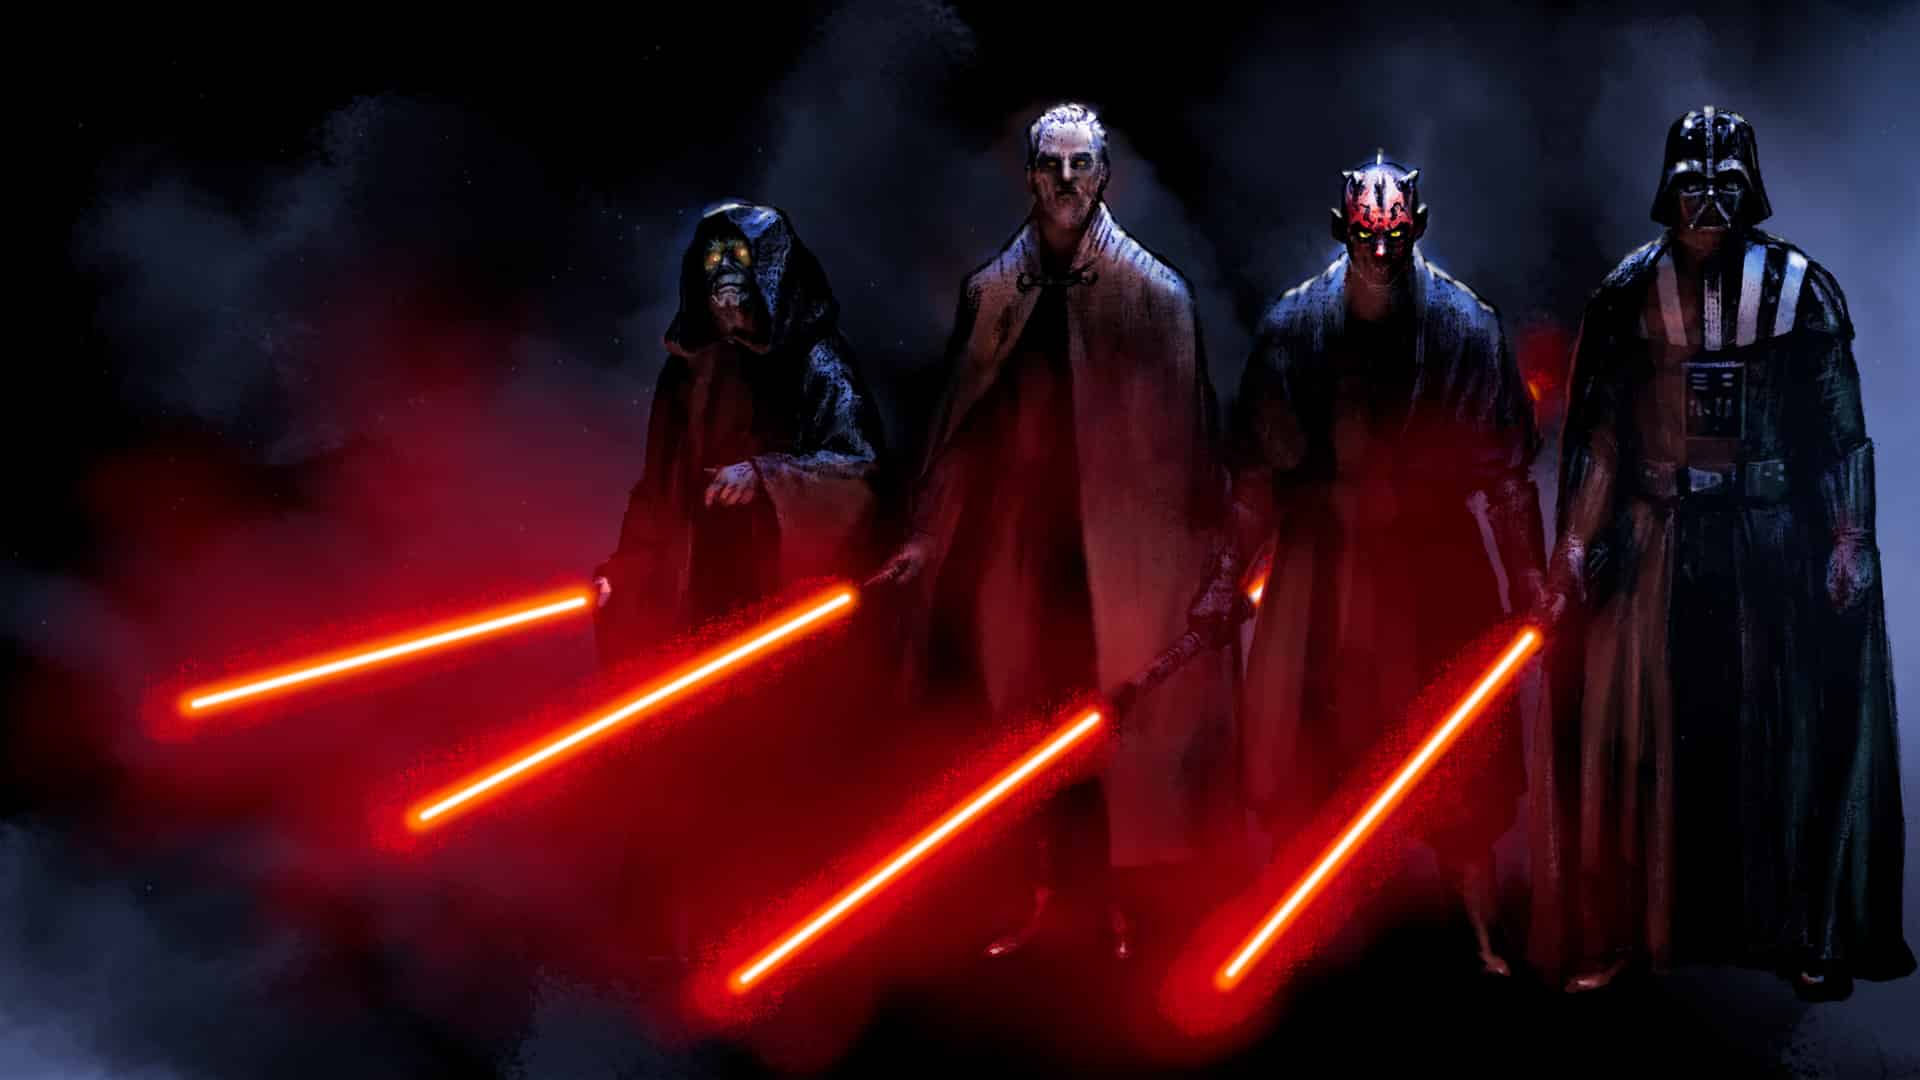 Darth Vader: Perché le spade dei Sith sono rosse? Ce lo spiega Palpatine